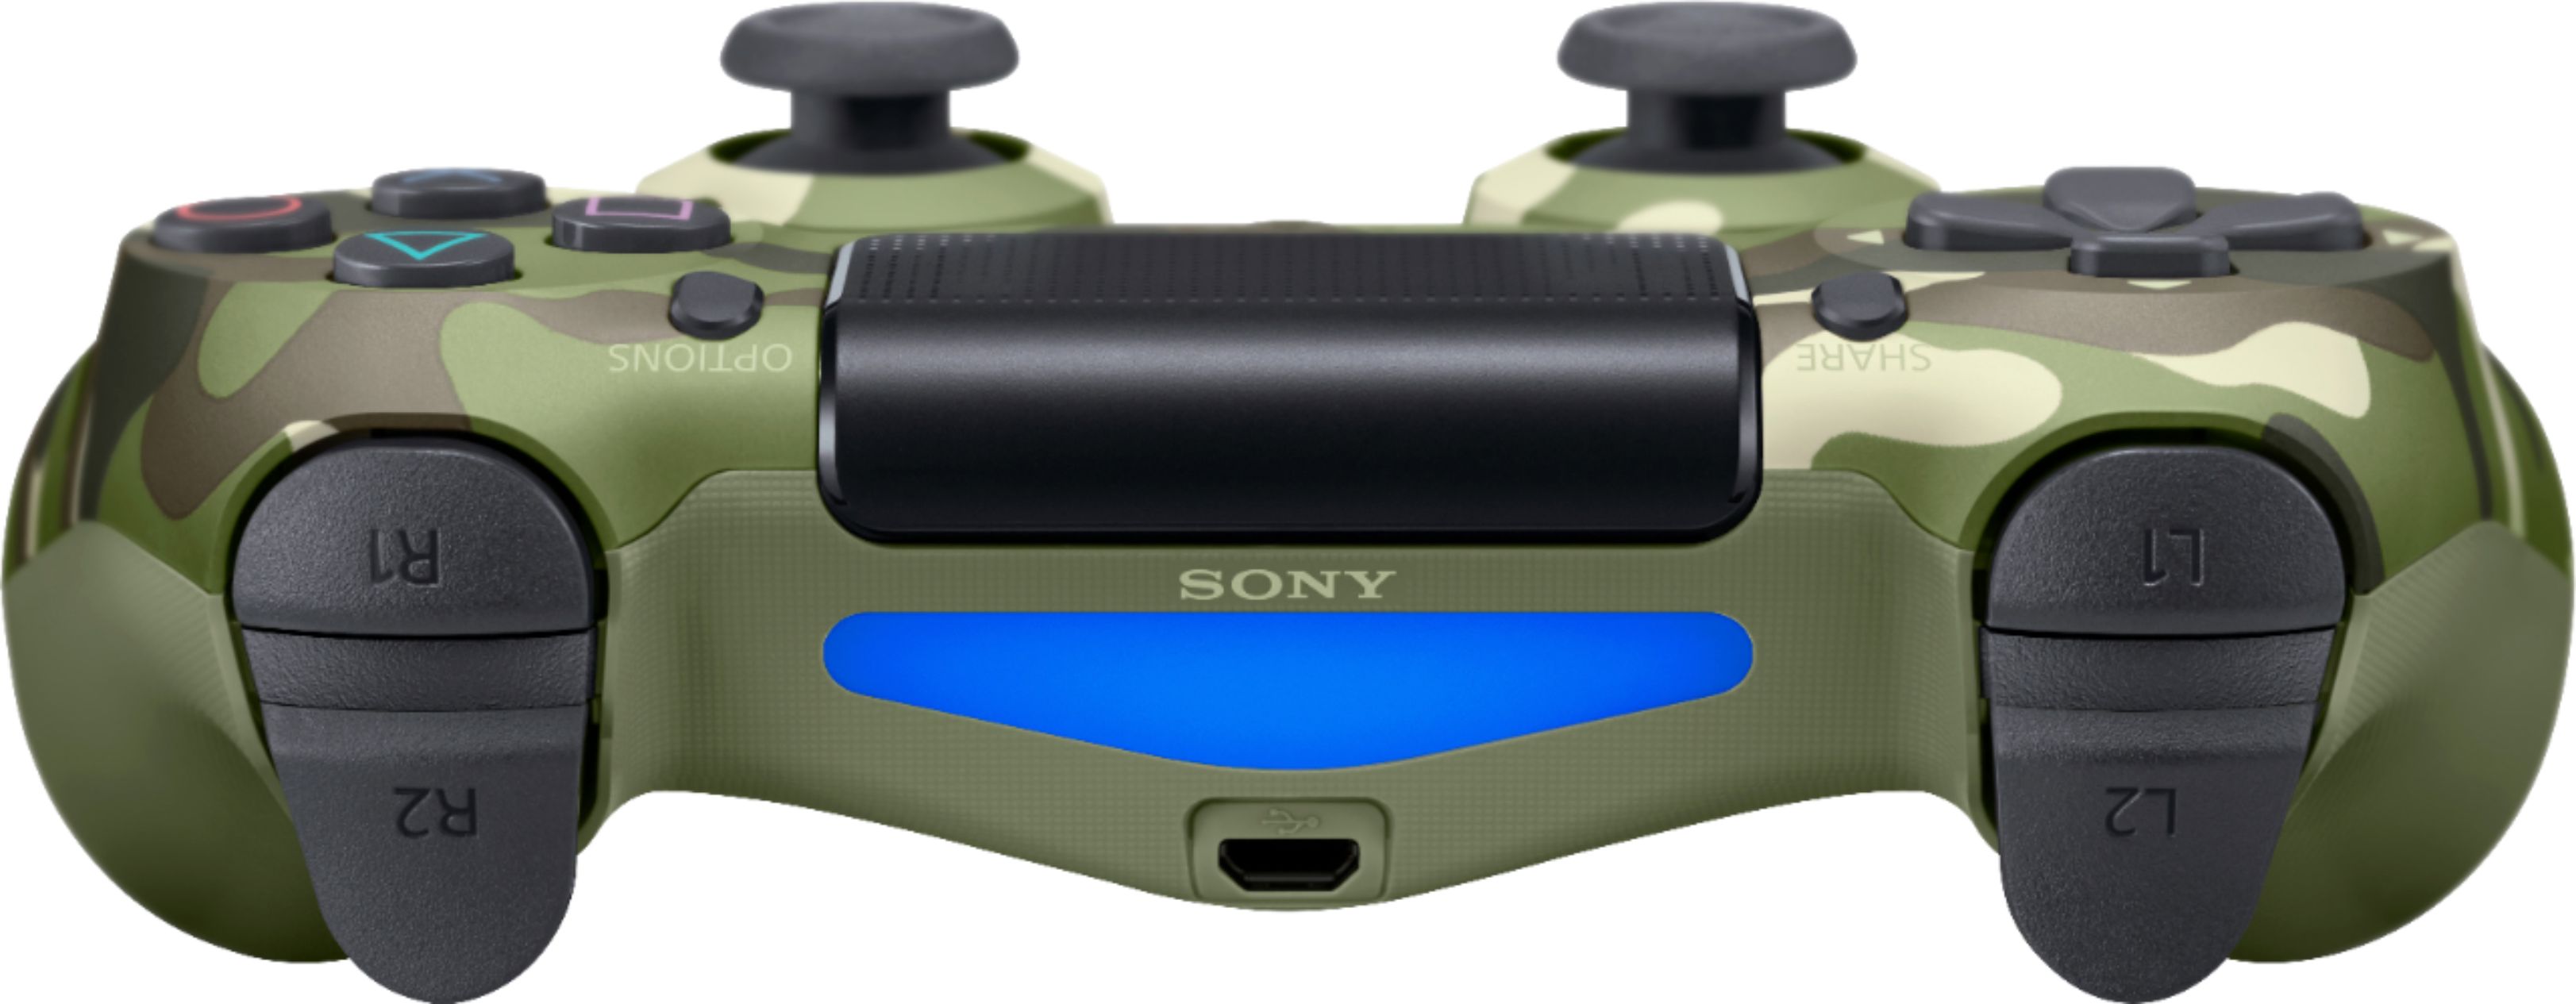 vervoer Verbeteren analoog DualShock 4 Wireless Controller for Sony PlayStation 4 Green Camouflage  3001544 - Best Buy